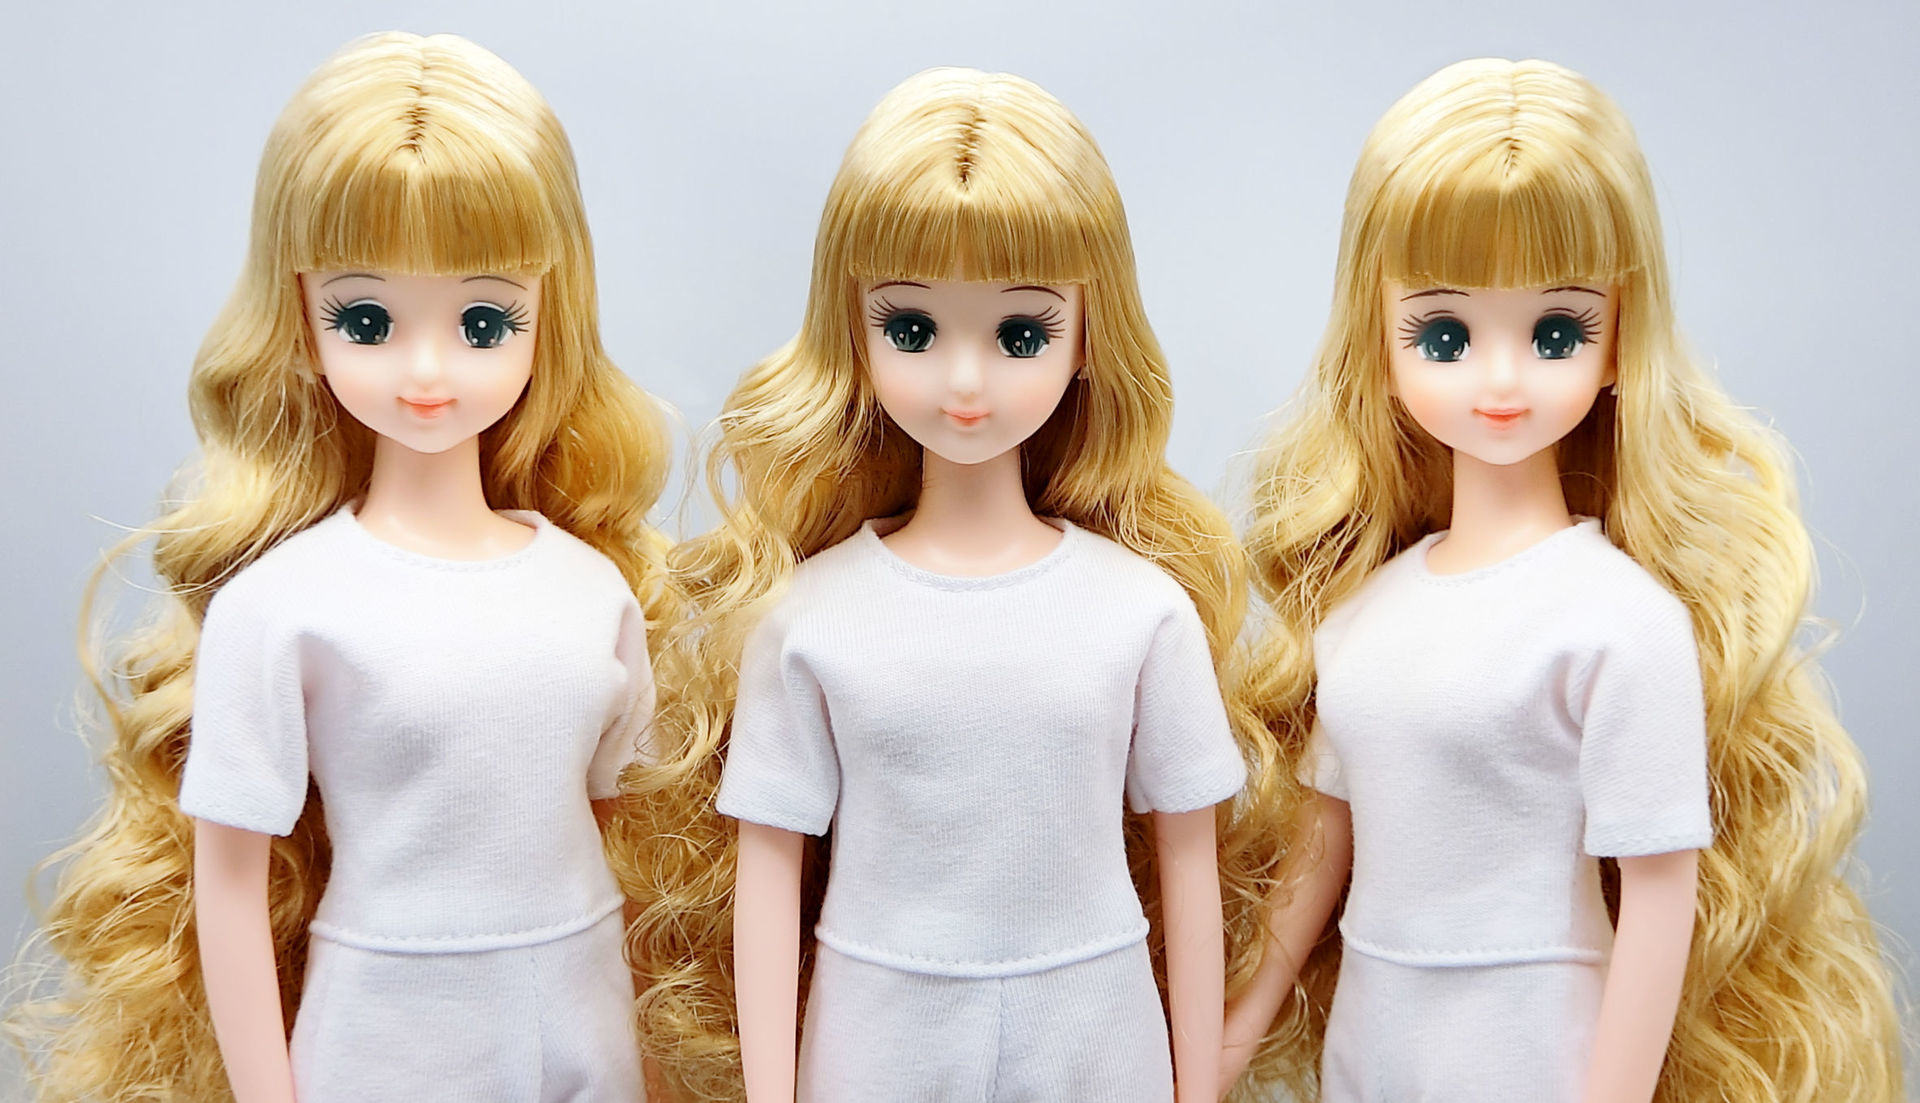 2022年日本橋BASICモデル ジェニーシリーズ・ドレス発売のお知らせ: リカちゃんキャッスルのちいさなおみせ Liccacastle Small  Shop Tokyo